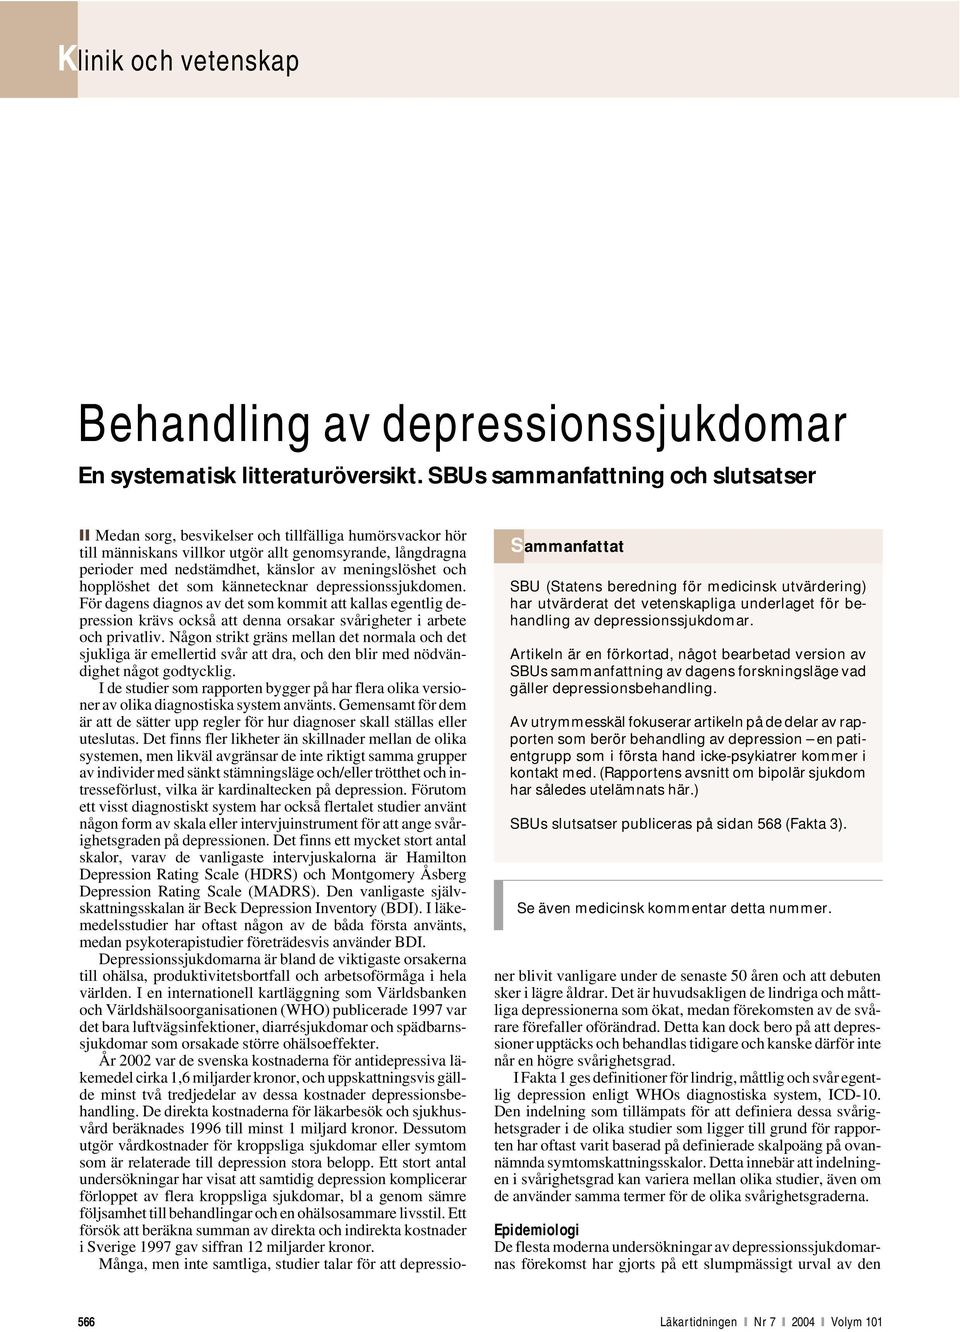 Artikeln är en förkortad, något bearbetad version av SBUs sammanfattning av dagens forskningsläge vad gäller depressionsbehandling.